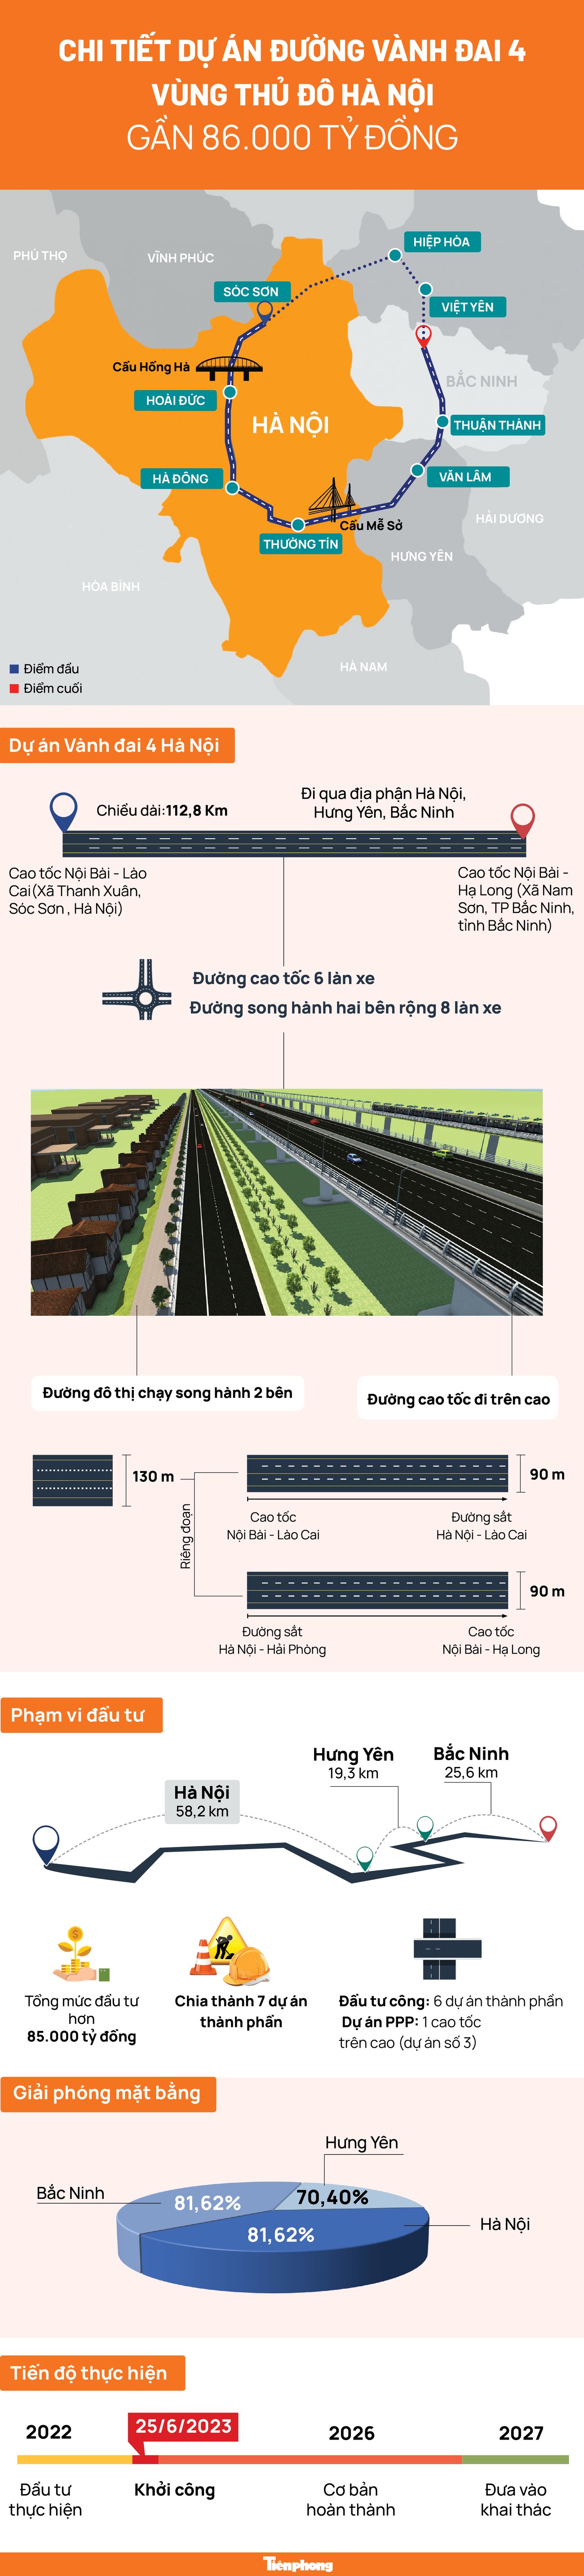 Chi tiết Dự án đường vành đai 4 vùng Thủ đô Hà Nội gần 86.000 tỷ đồng - Ảnh 1.